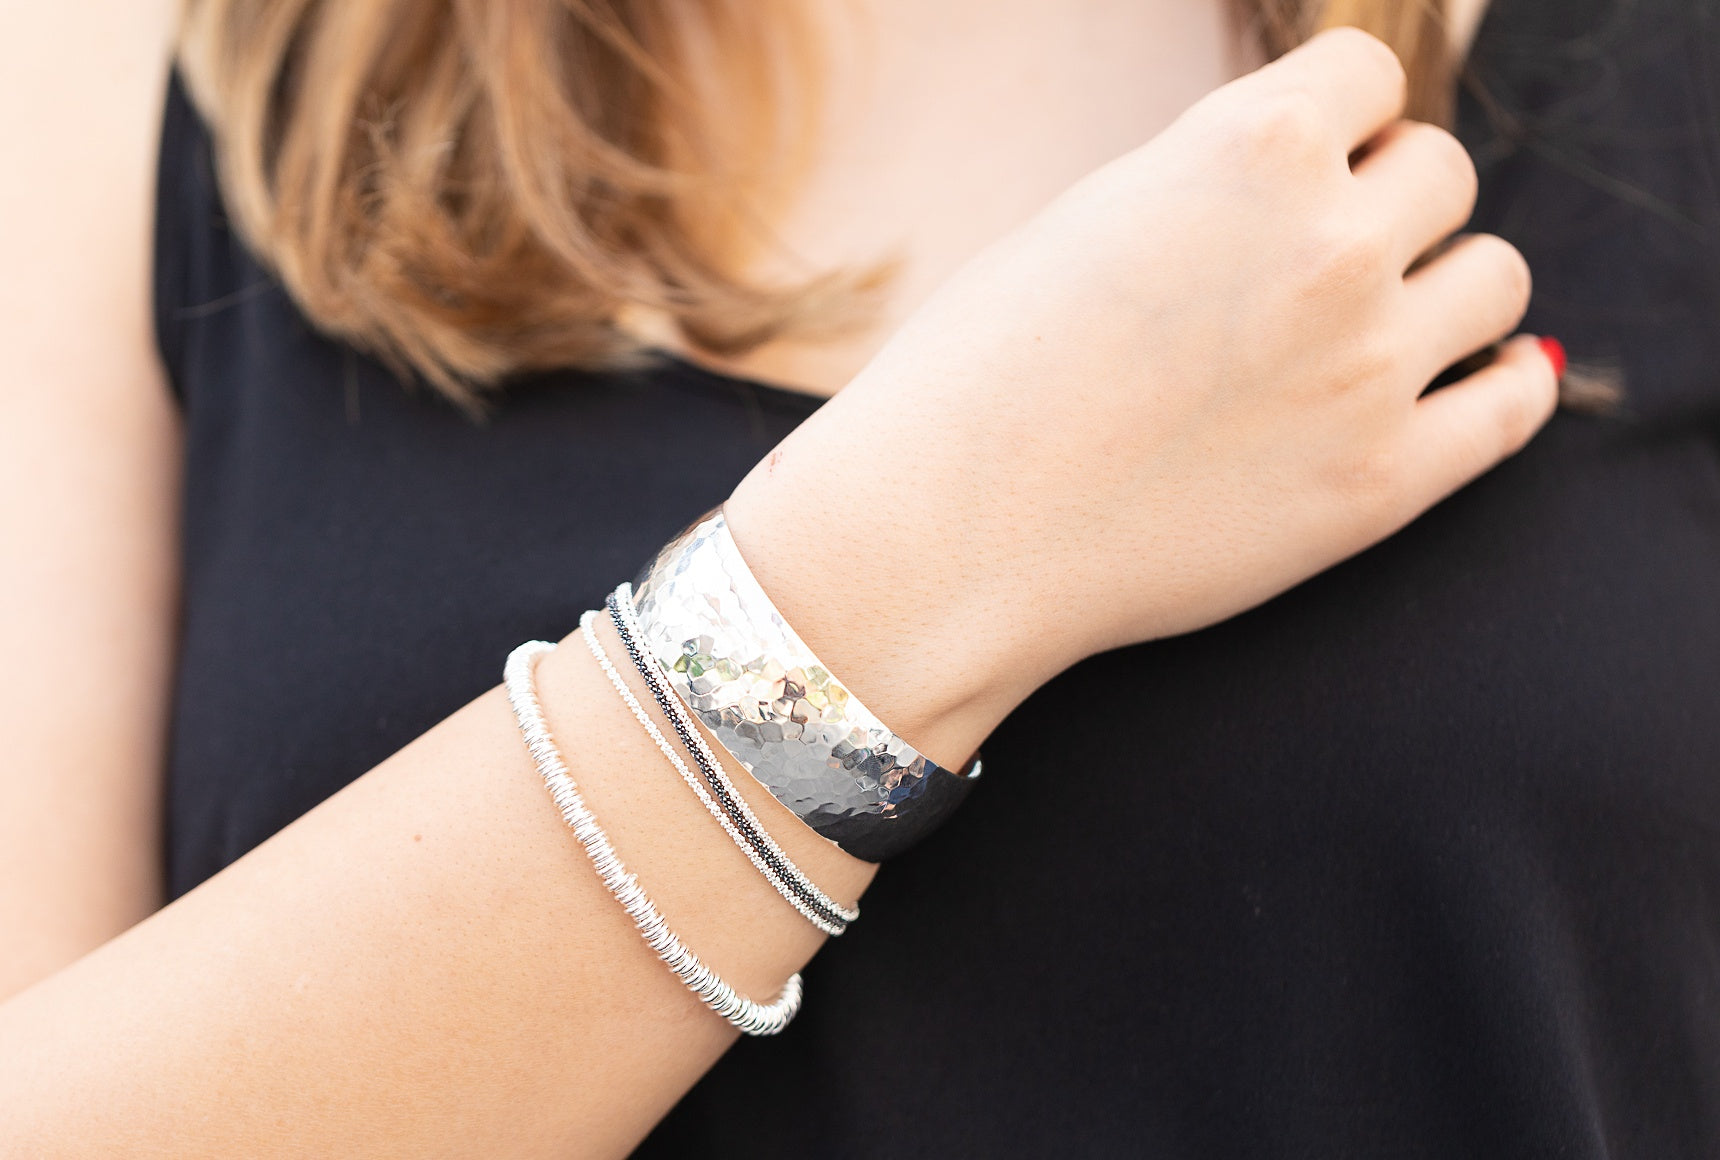 Ein Criss-Cross-Armband aus Silber für Damen mit einem geschmeidigen Geflecht und einer glänzend funkelnden Oberfläche, getragen am Handgelenk einer Dame.